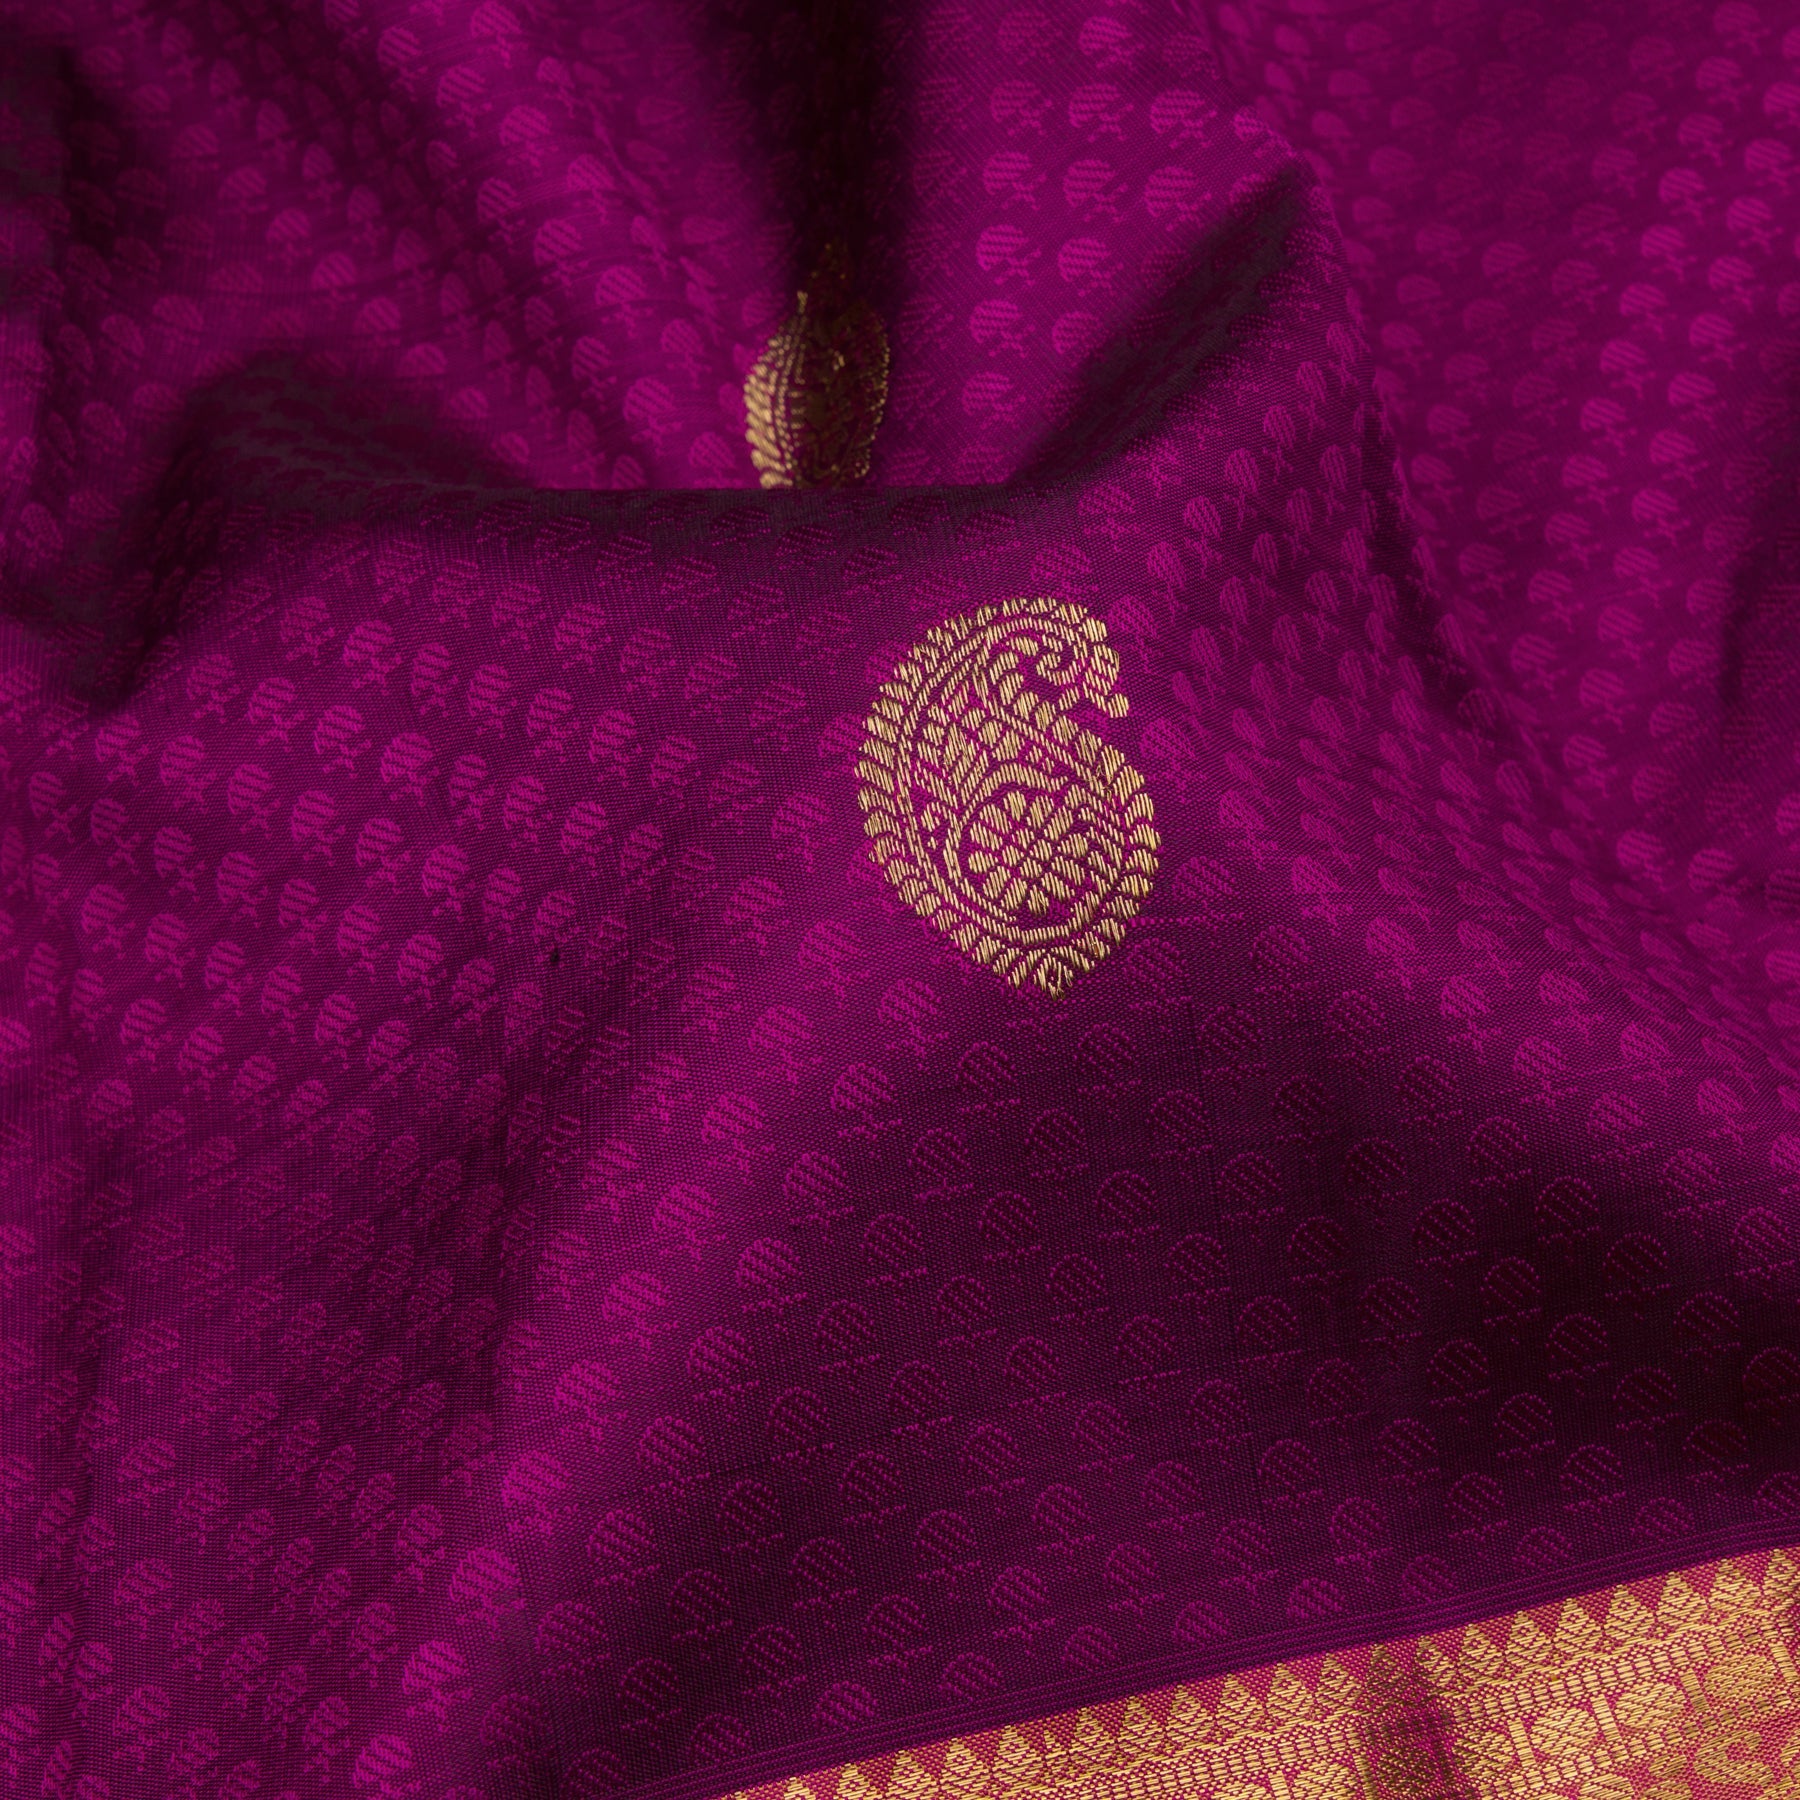 Kanakavalli Kanjivaram Silk Sari 23-599-HS001-09772 - Fabric View